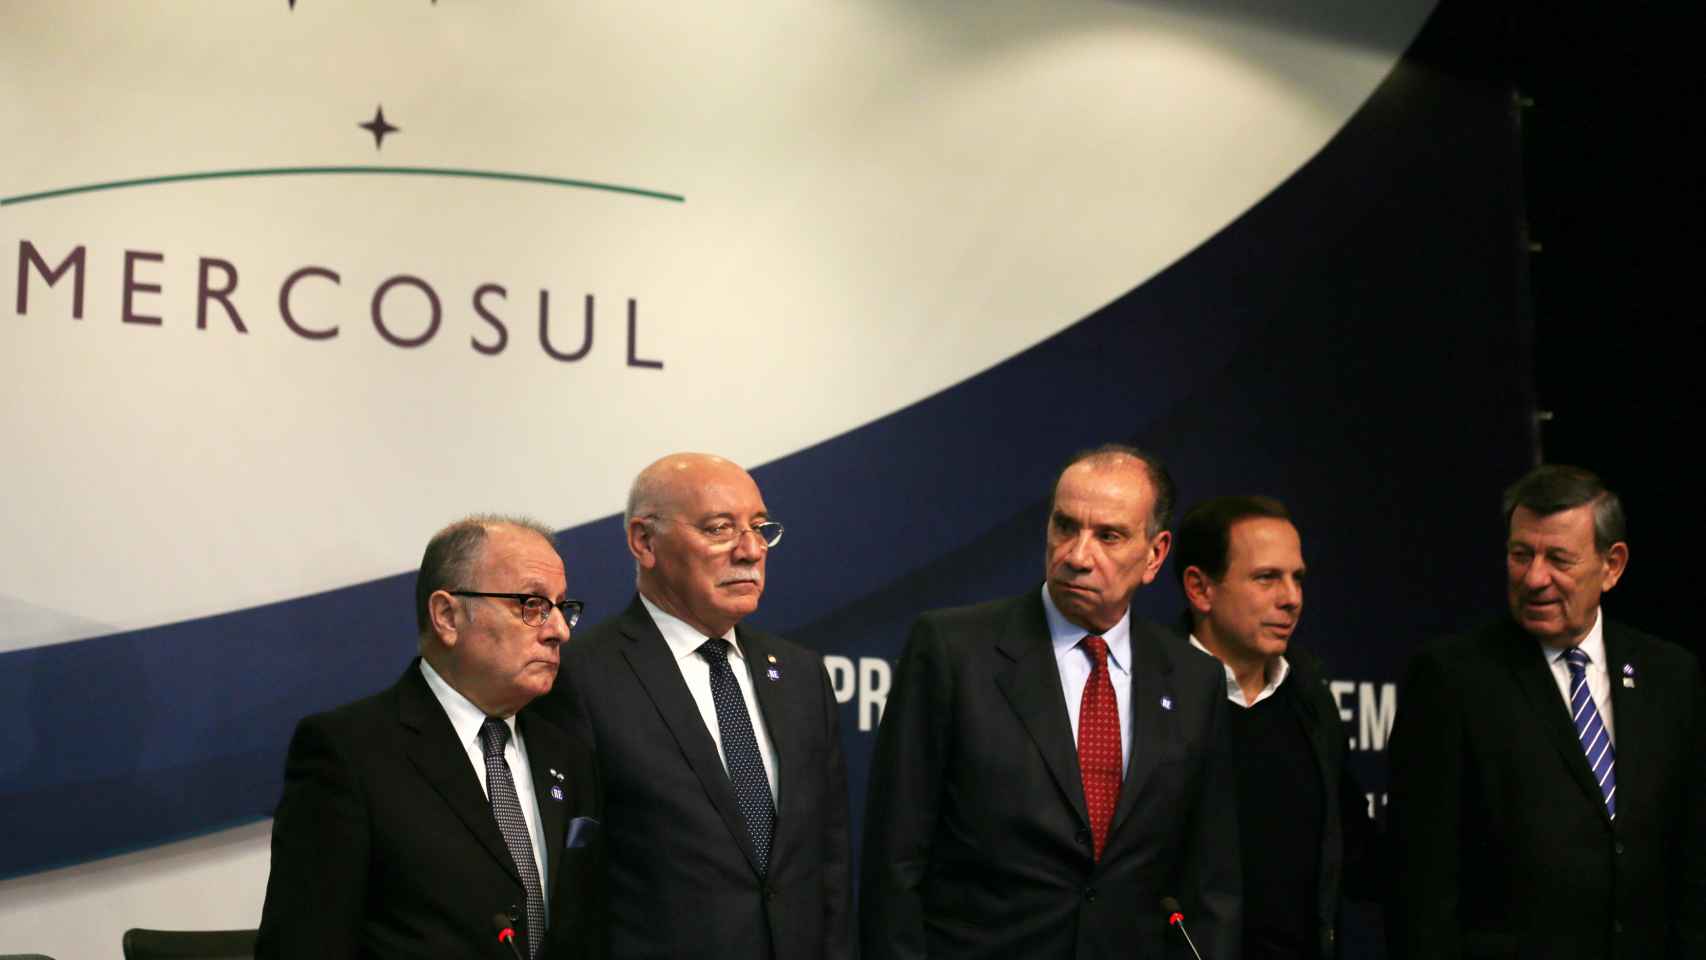 Comparecencia de los ministros presentes en la reunión de Mercosur en Brasil.